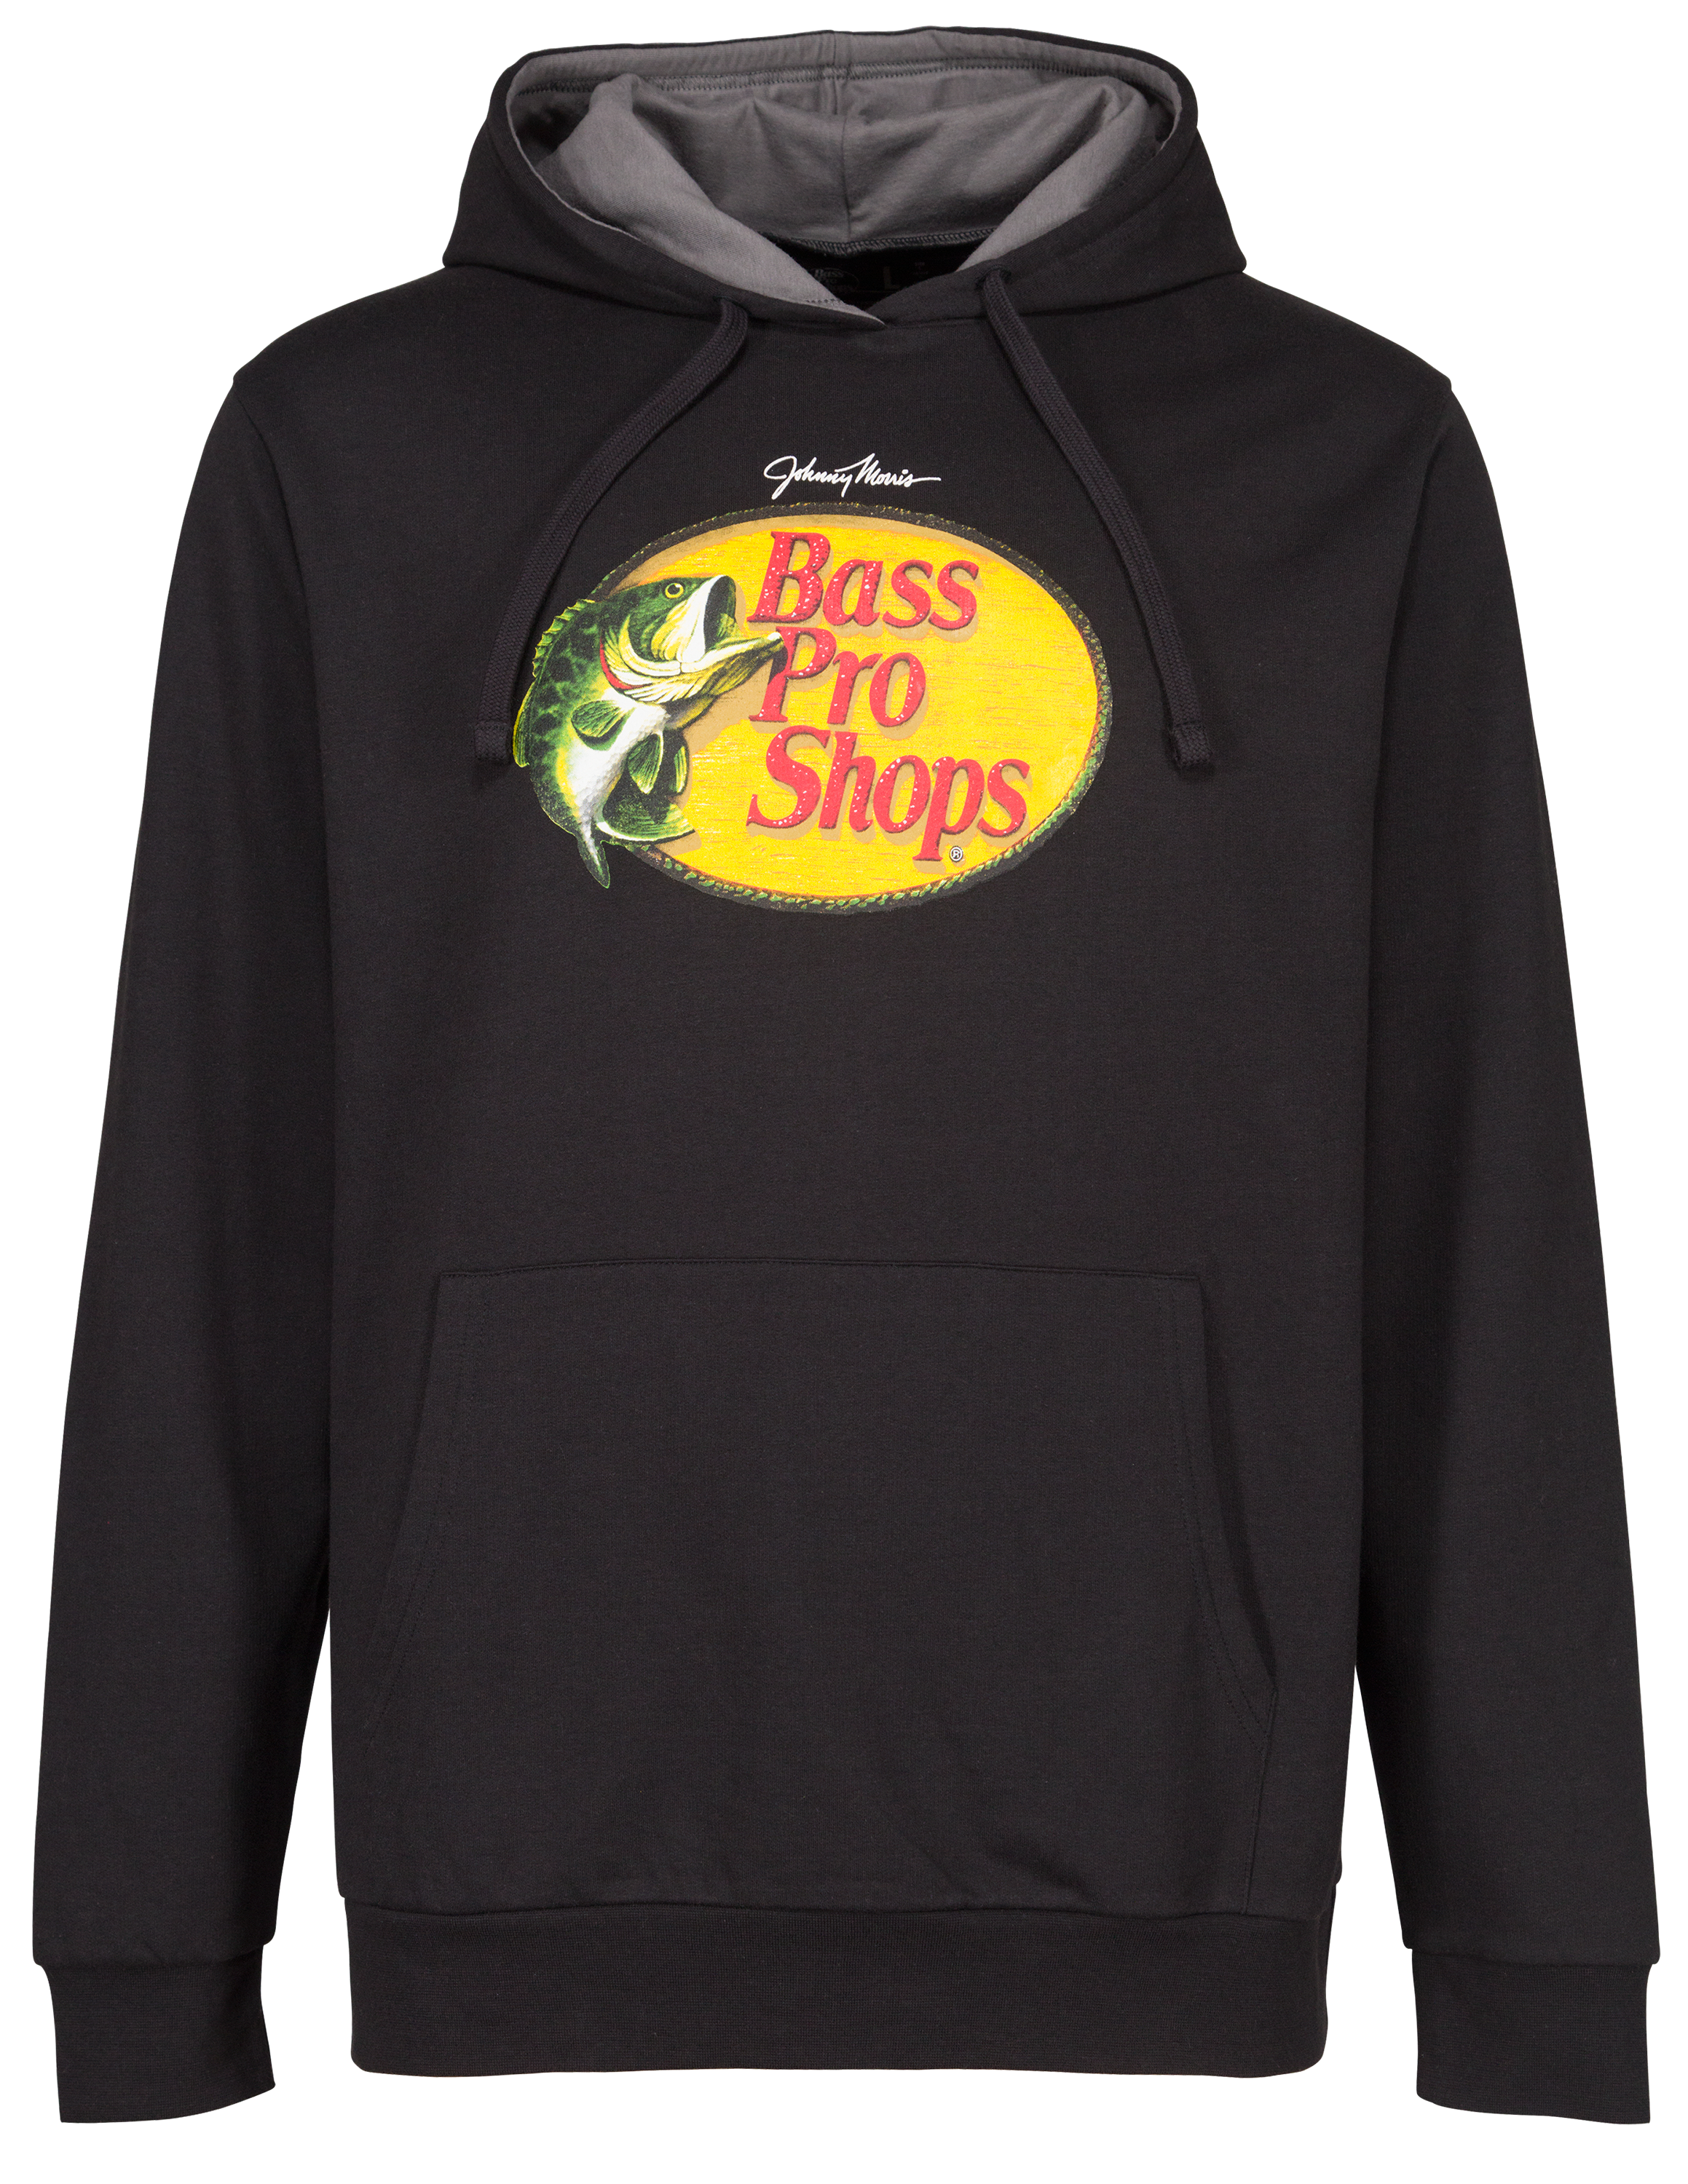 Bass Pro Shops Woodcut Long-Sleeve T-Shirt for Men - Moss Heather - XL